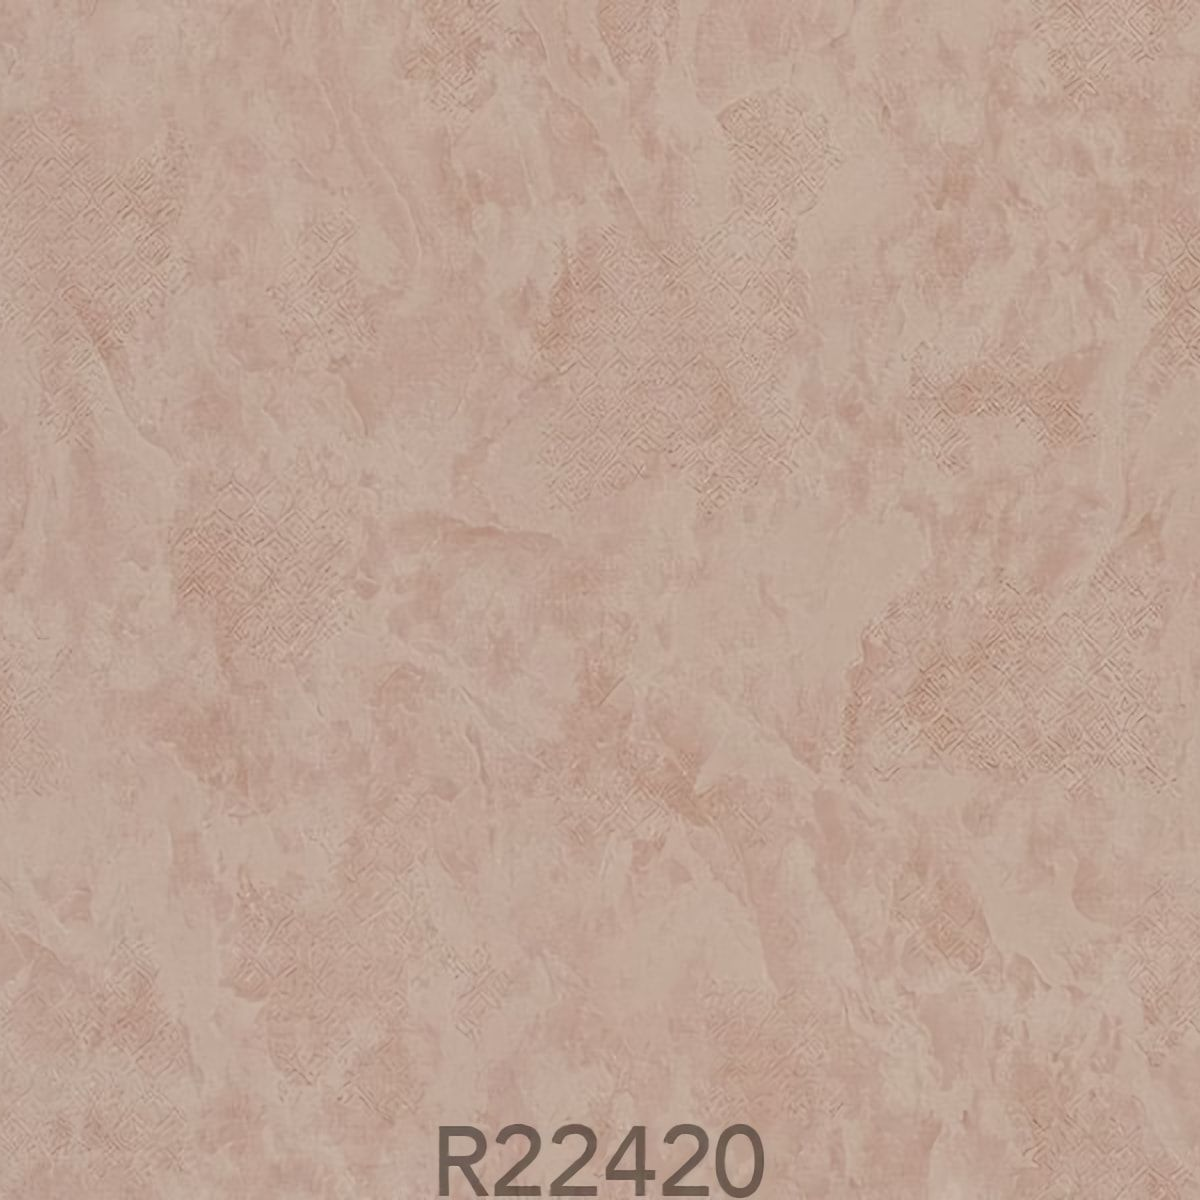 Обои R22420 Luxor Fipar - российские, флизелиновые, цвета капучино, под штукатурку, в стиле лофт, длина 10.00м, ширина 1.06м, рекомендуем в коридор.